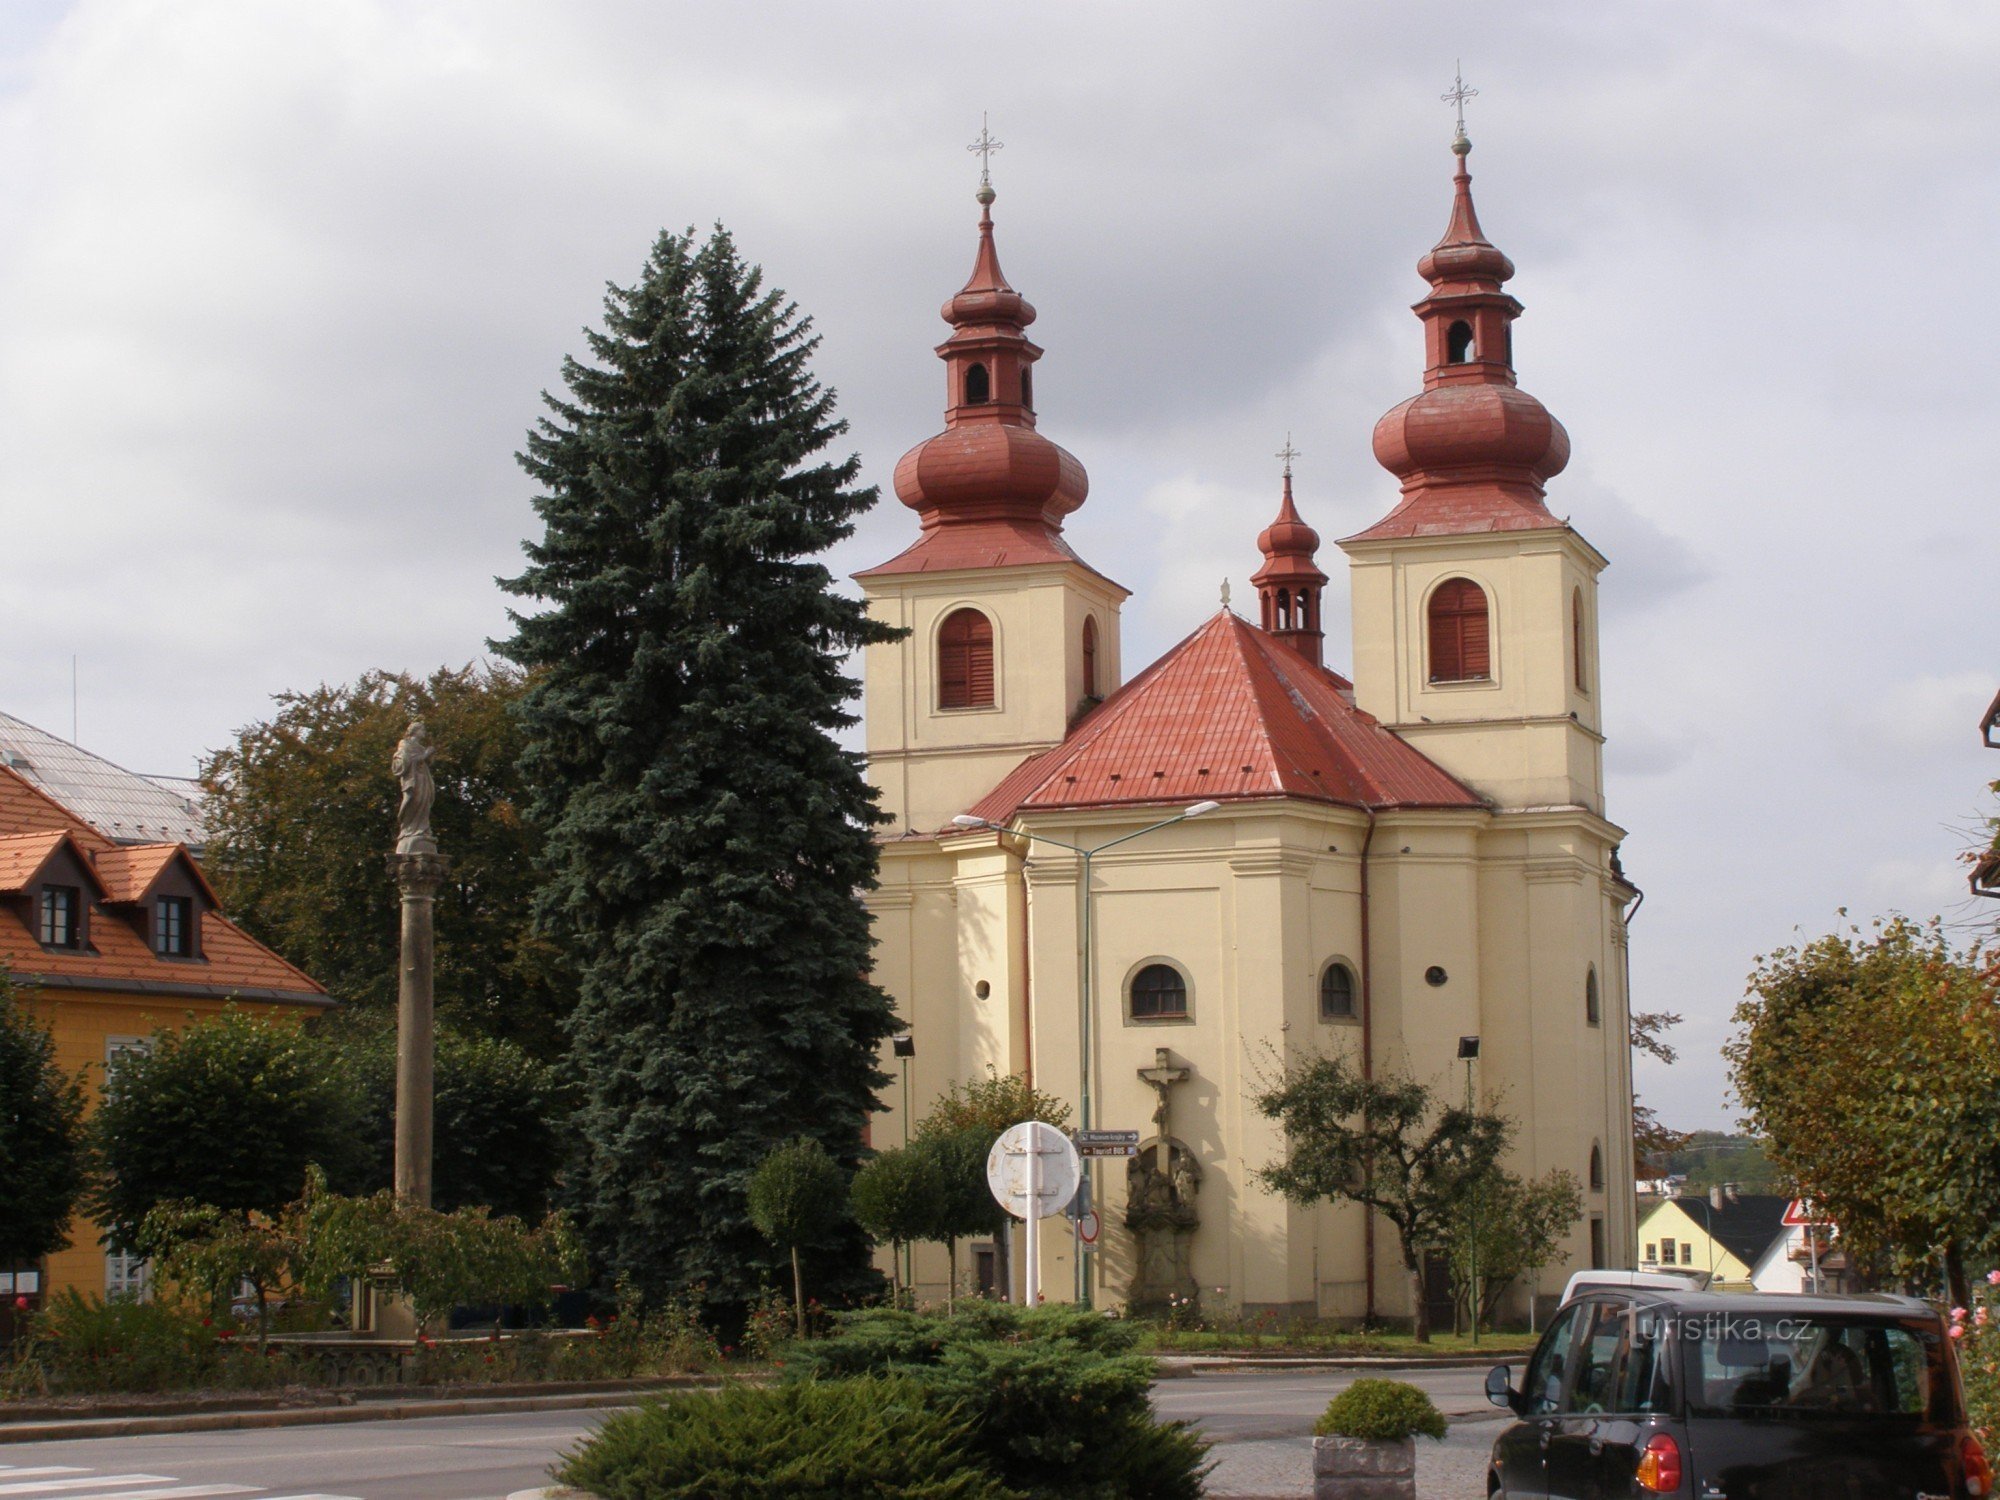 Vamberk - Pyhän Nikolauksen kirkko Prokopius